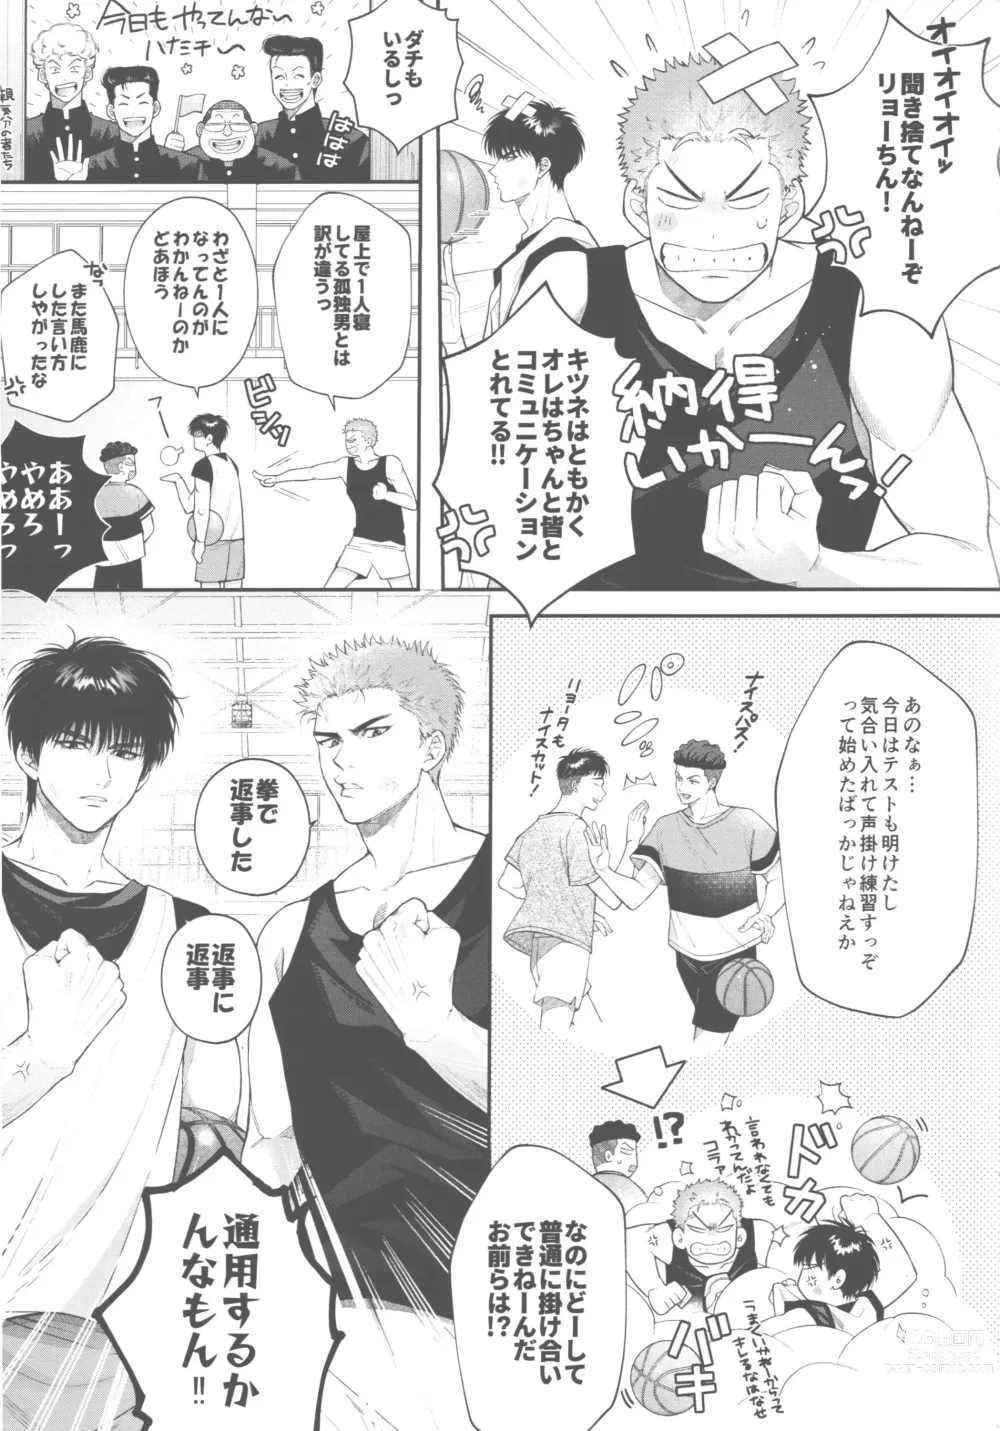 Page 5 of doujinshi doshiroto communication